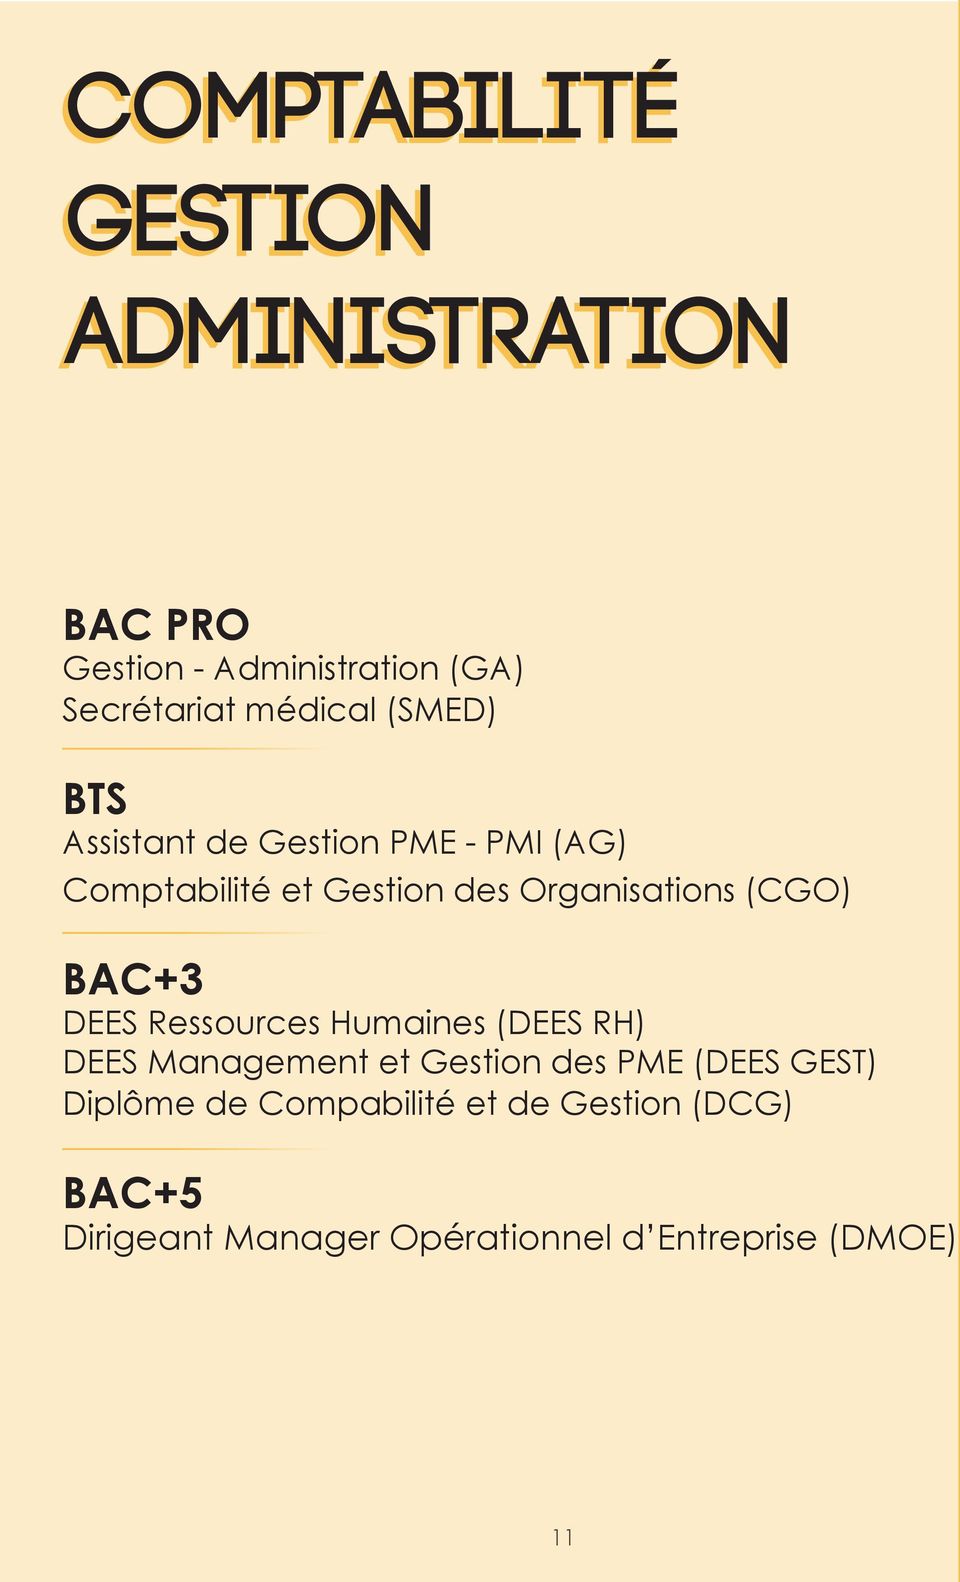 BAC+3 DEES Ressources Humaines (DEES RH) DEES Management et Gestion des PME (DEES GEST)